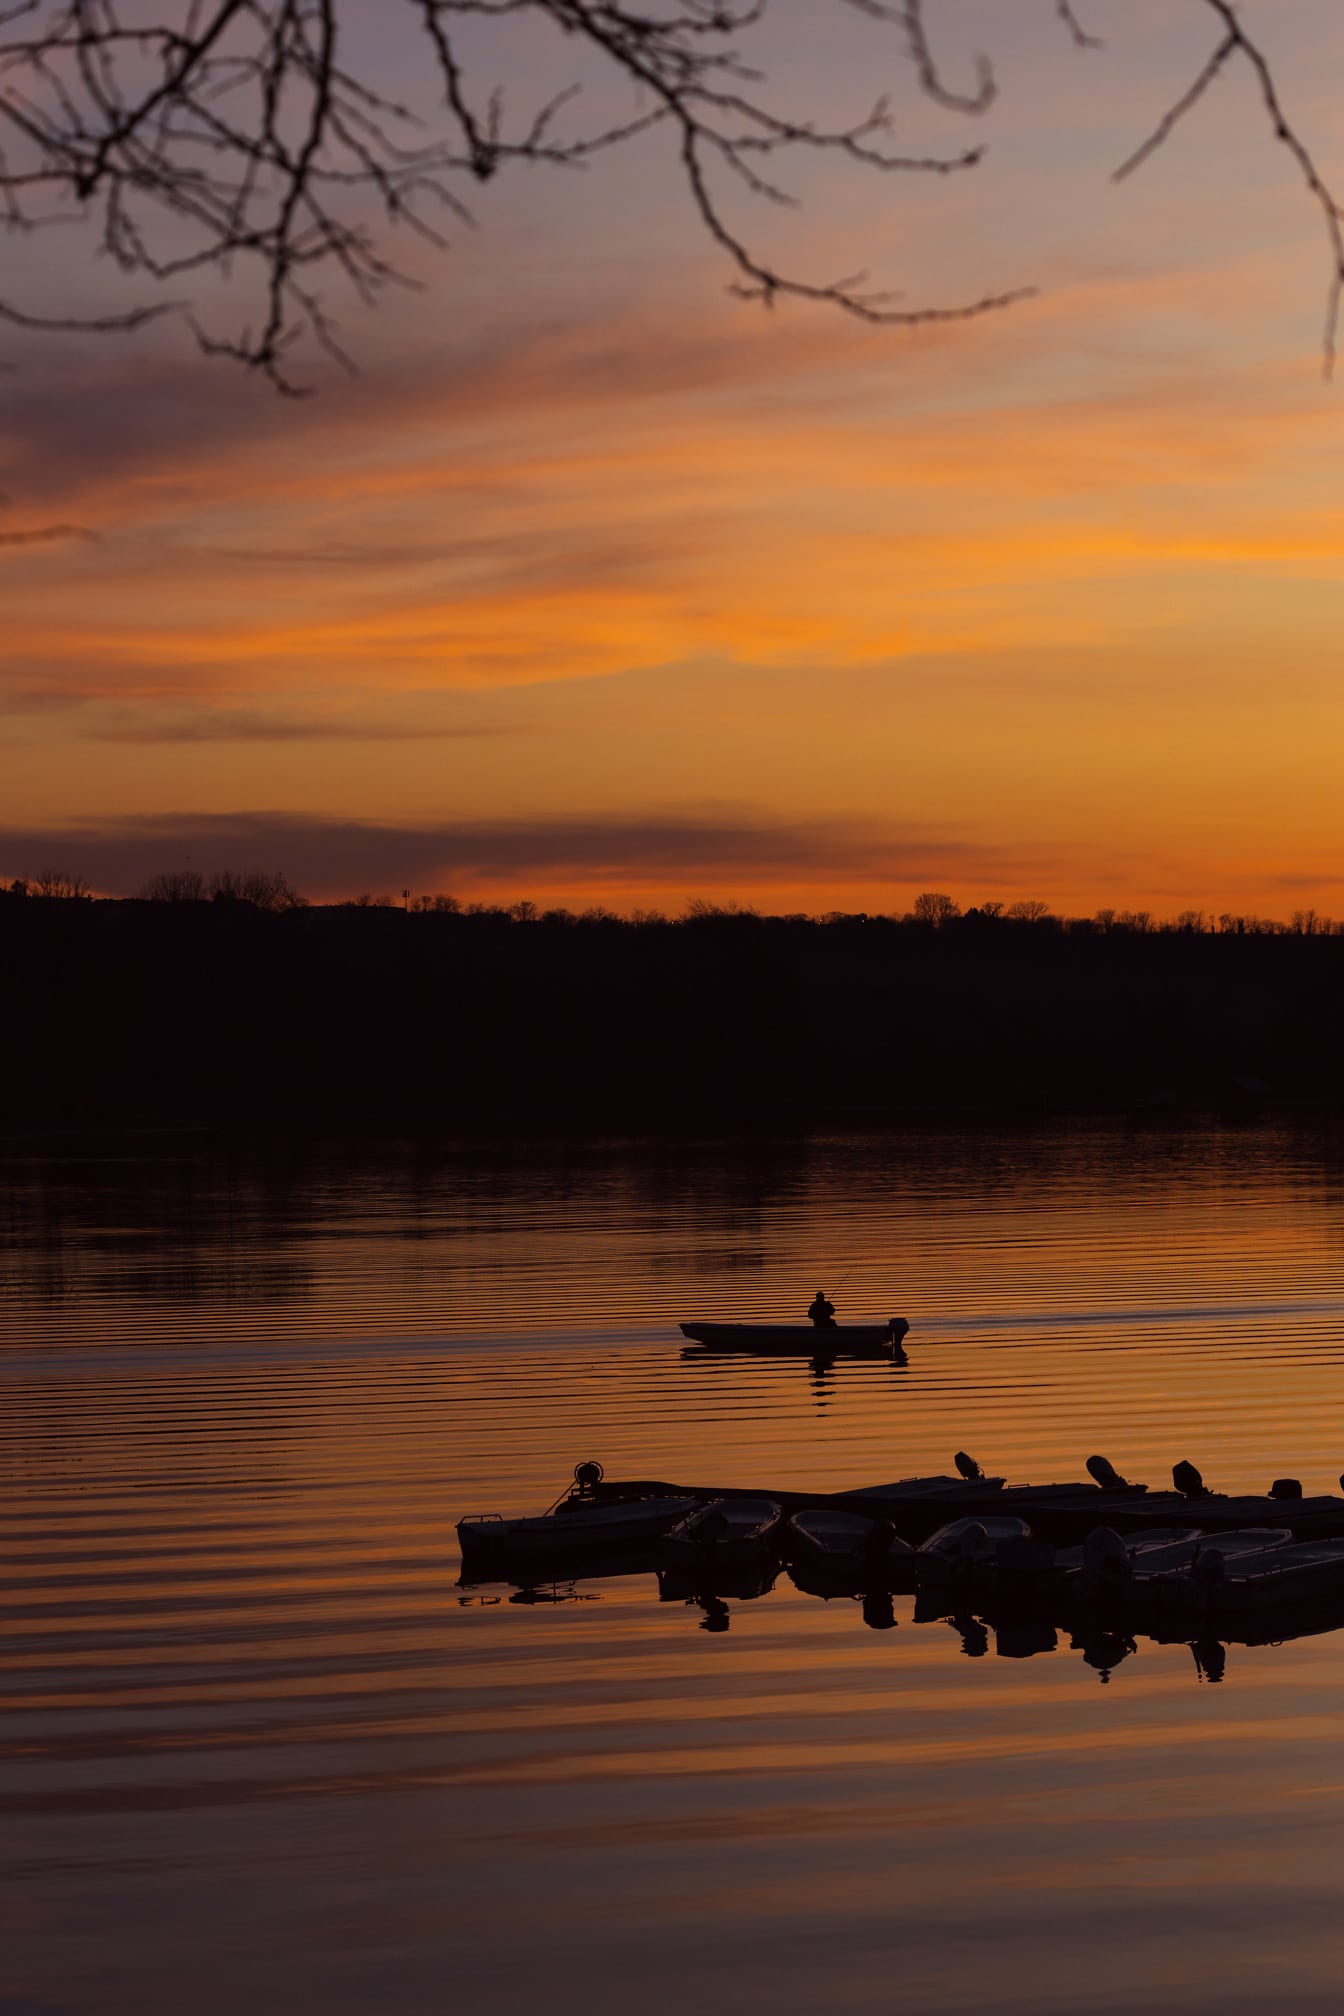 漁船のシルエットと湖畔のオレンジイエローのドラマチックな日の出